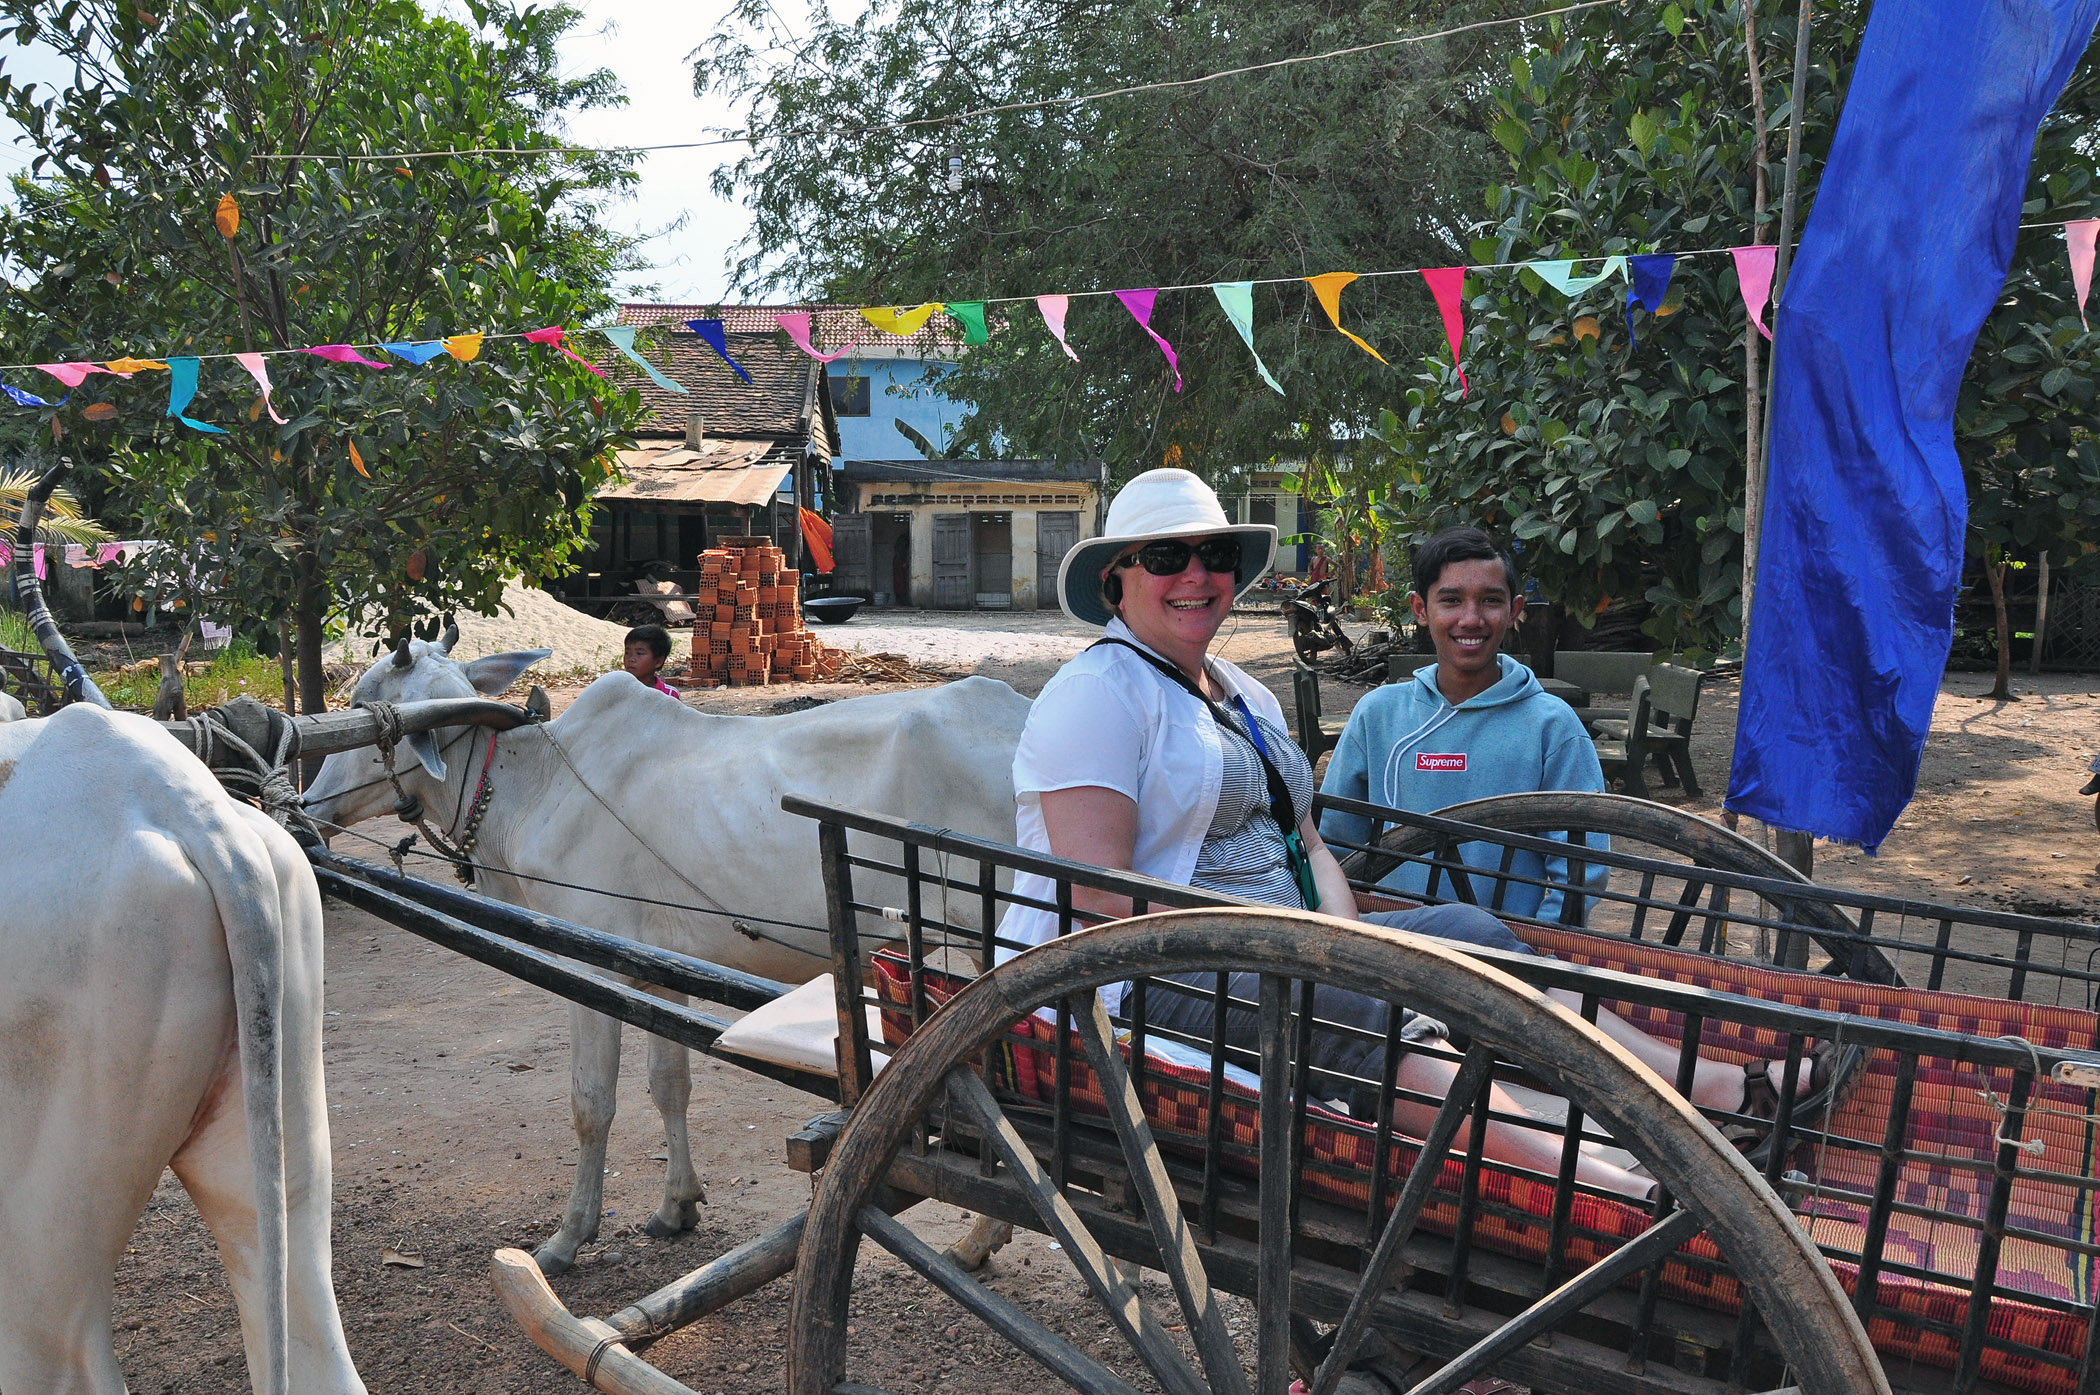 5. Ox ride in Cambodia